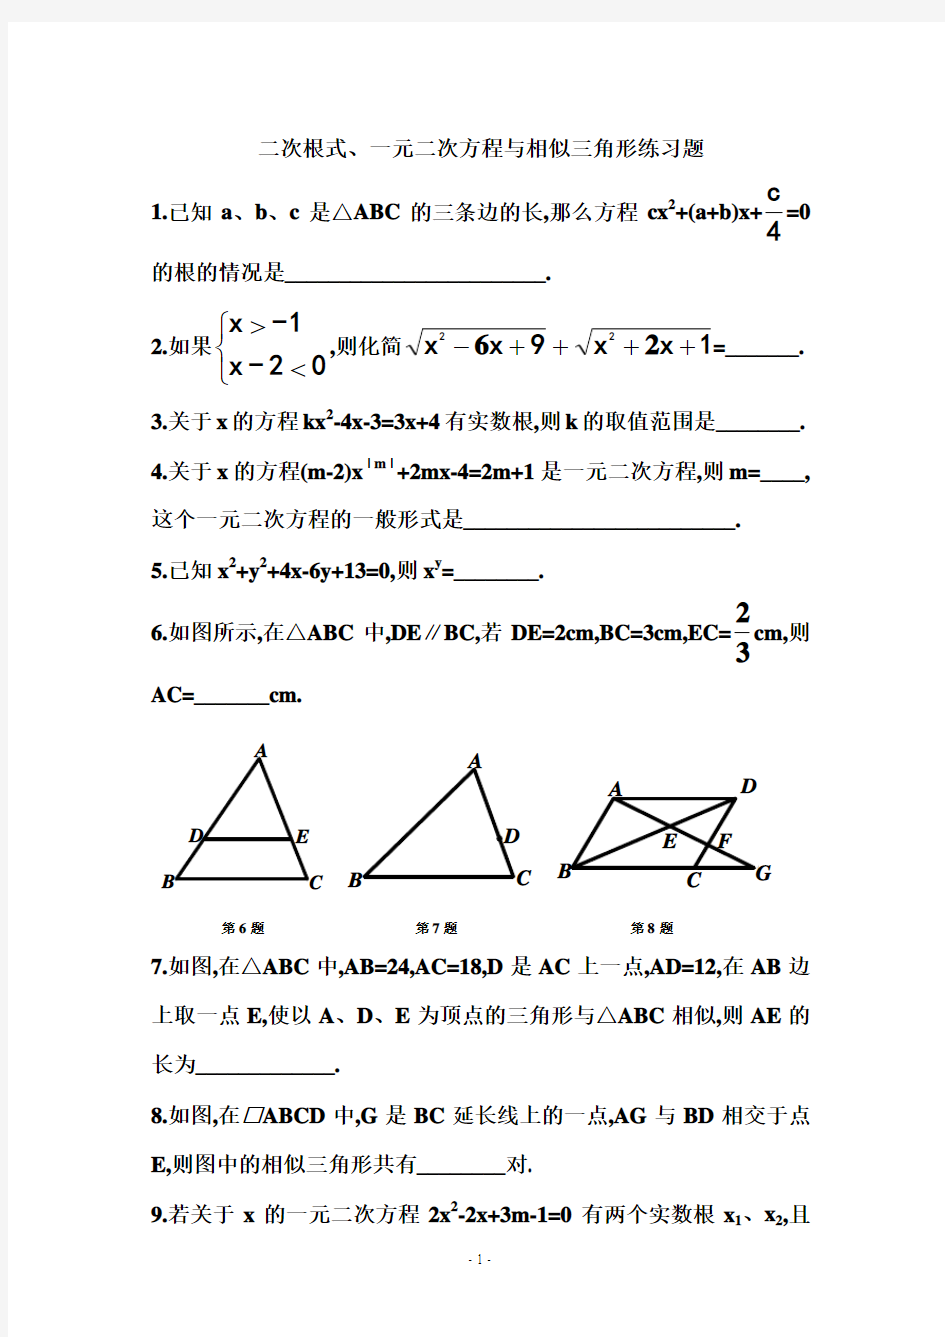 二次根式、一元二次方程与相似三角形练习题